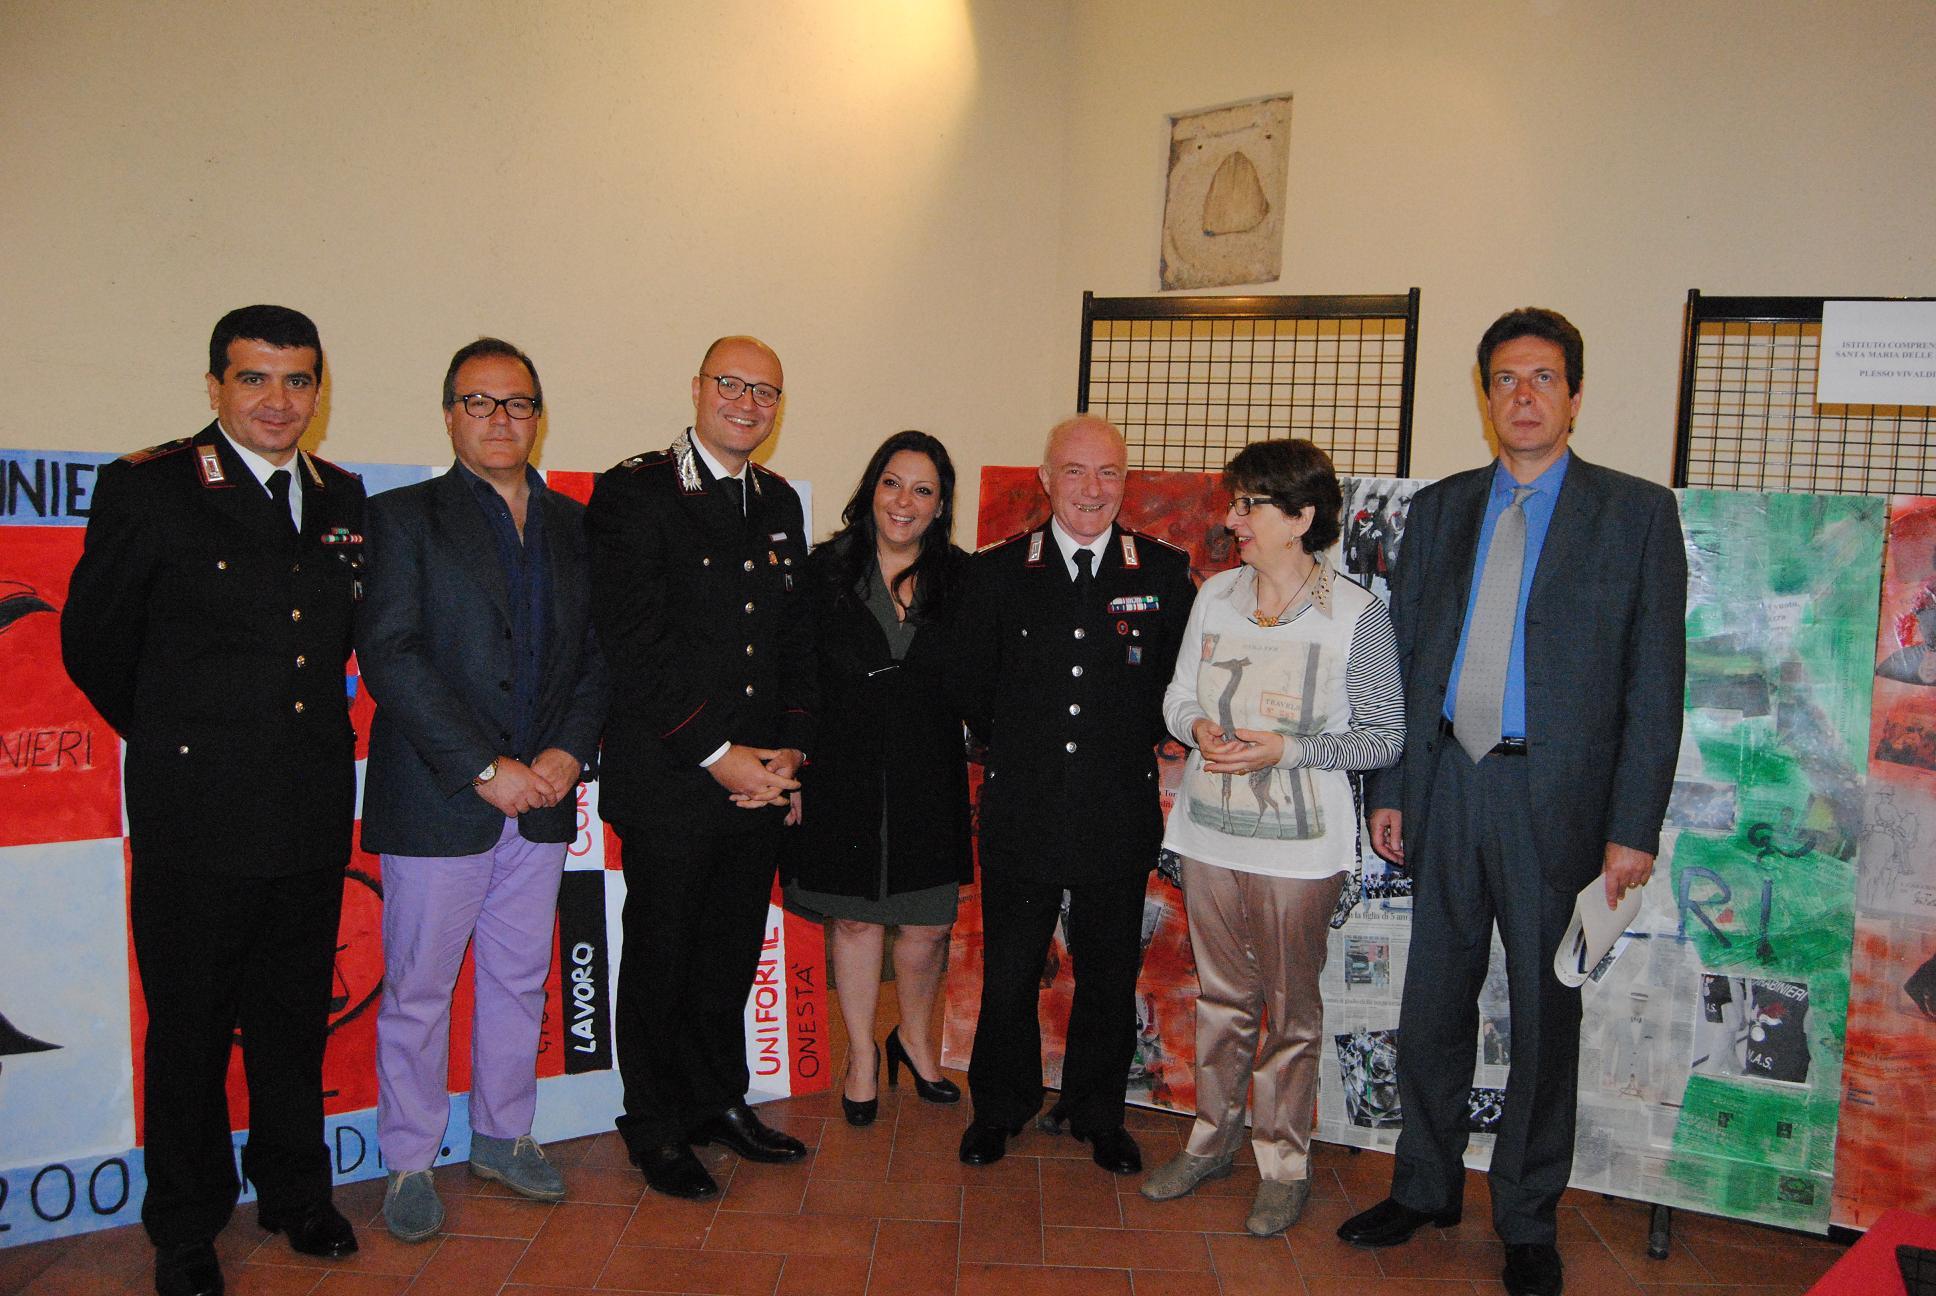 Bicentenario dell'Arma- la premiazione del concorso scolastico indetto da Palazzo Colonna